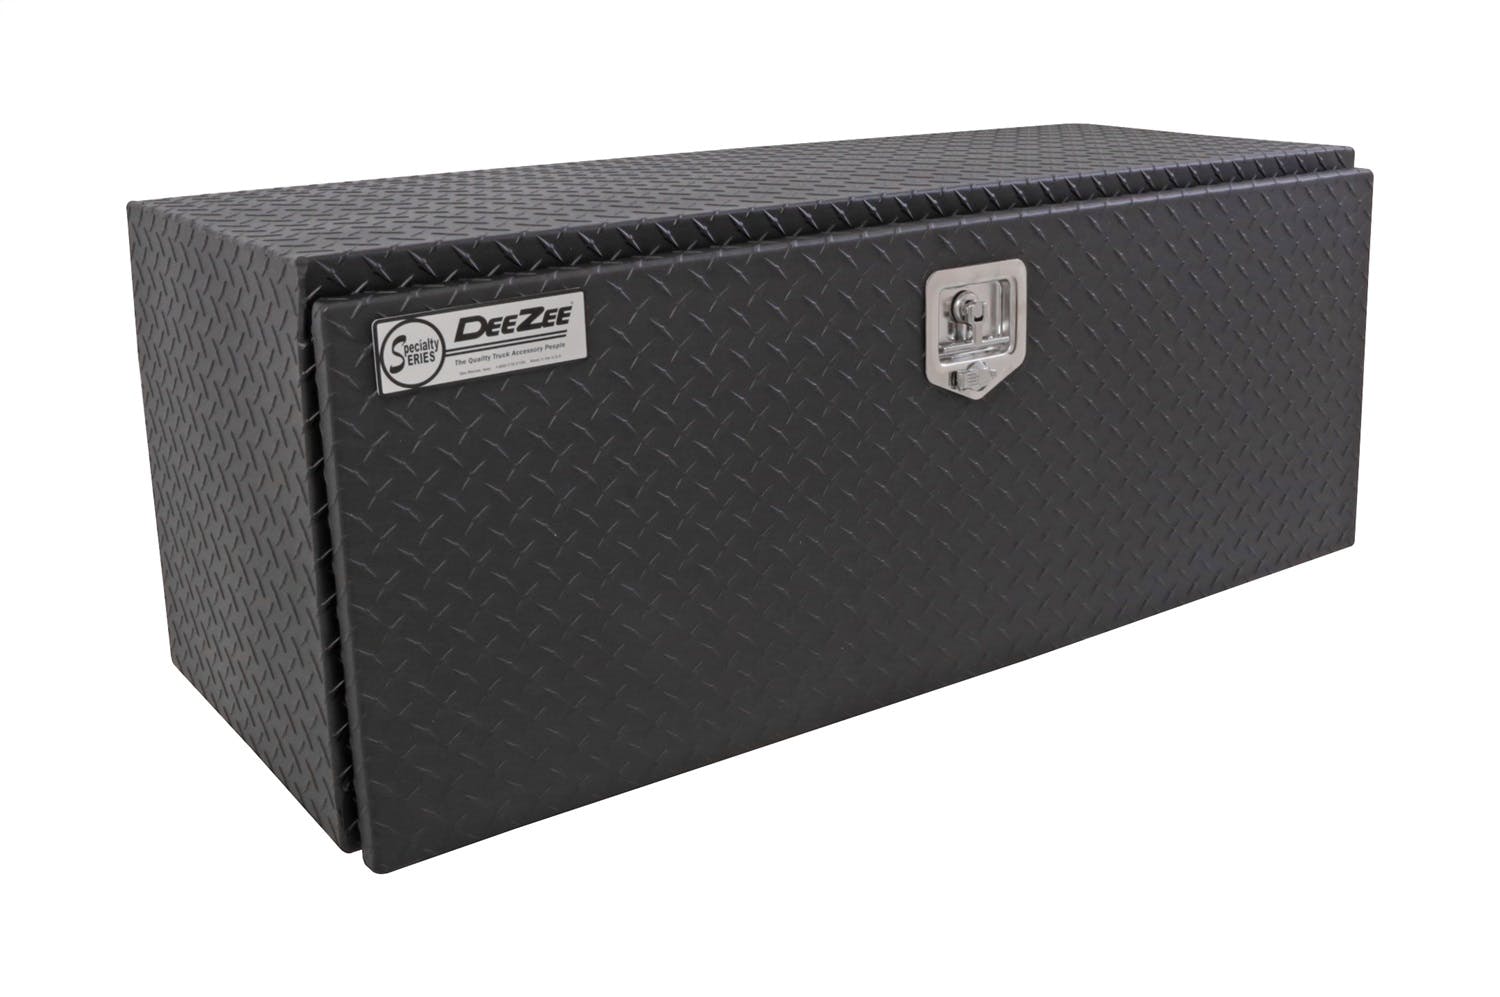 Dee Zee DZ75TB Tool Box - Specialty Underbed Black BT Alum